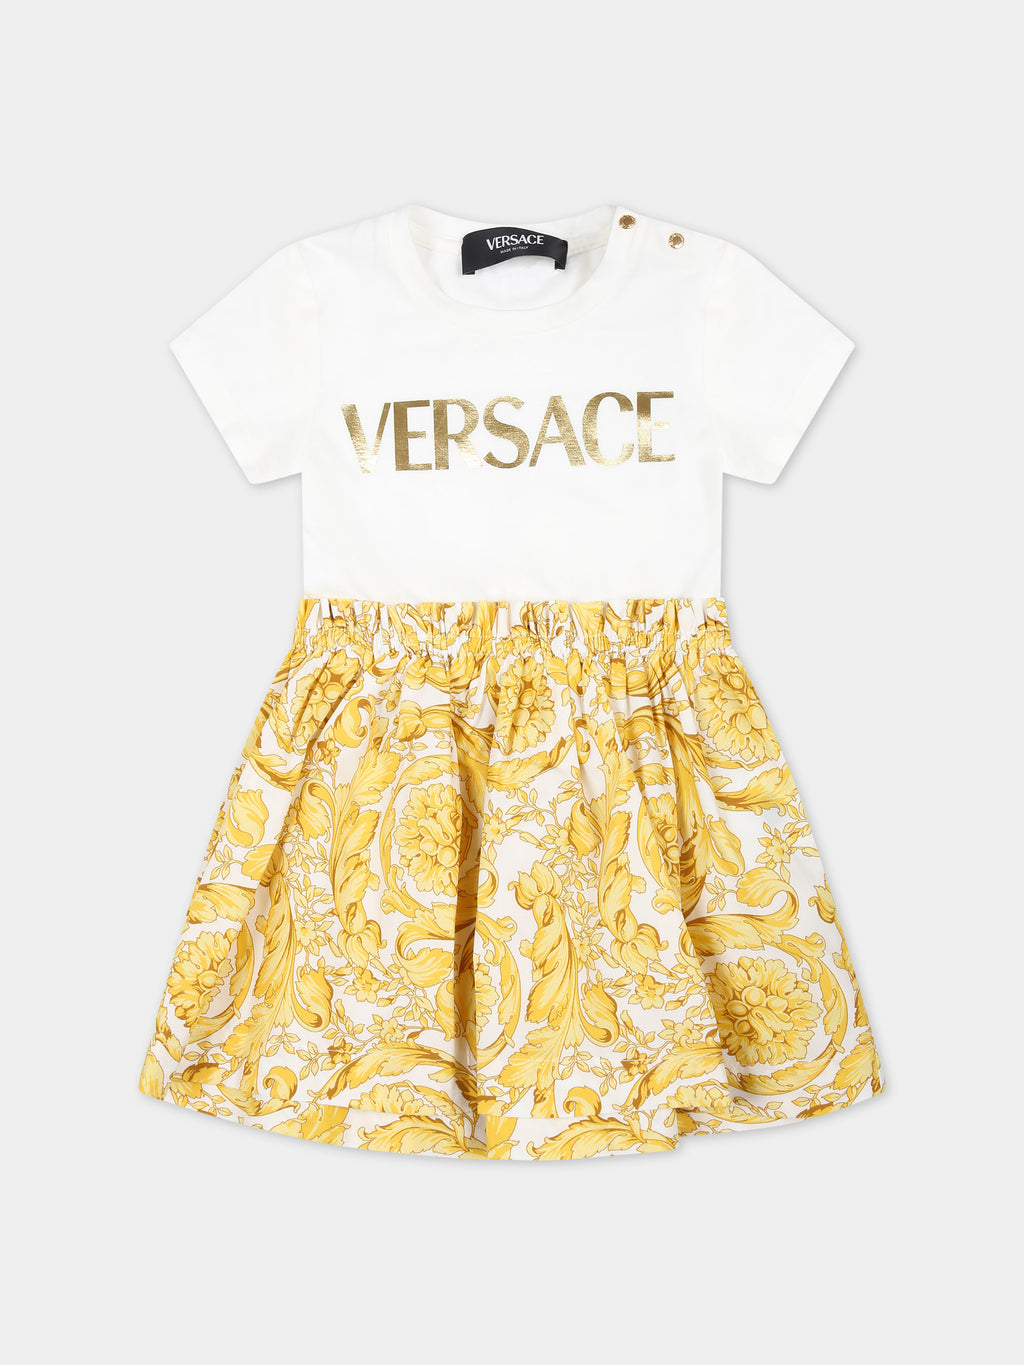 Robe blanche pour bébé fille avec logo Versace et imprimé baroque